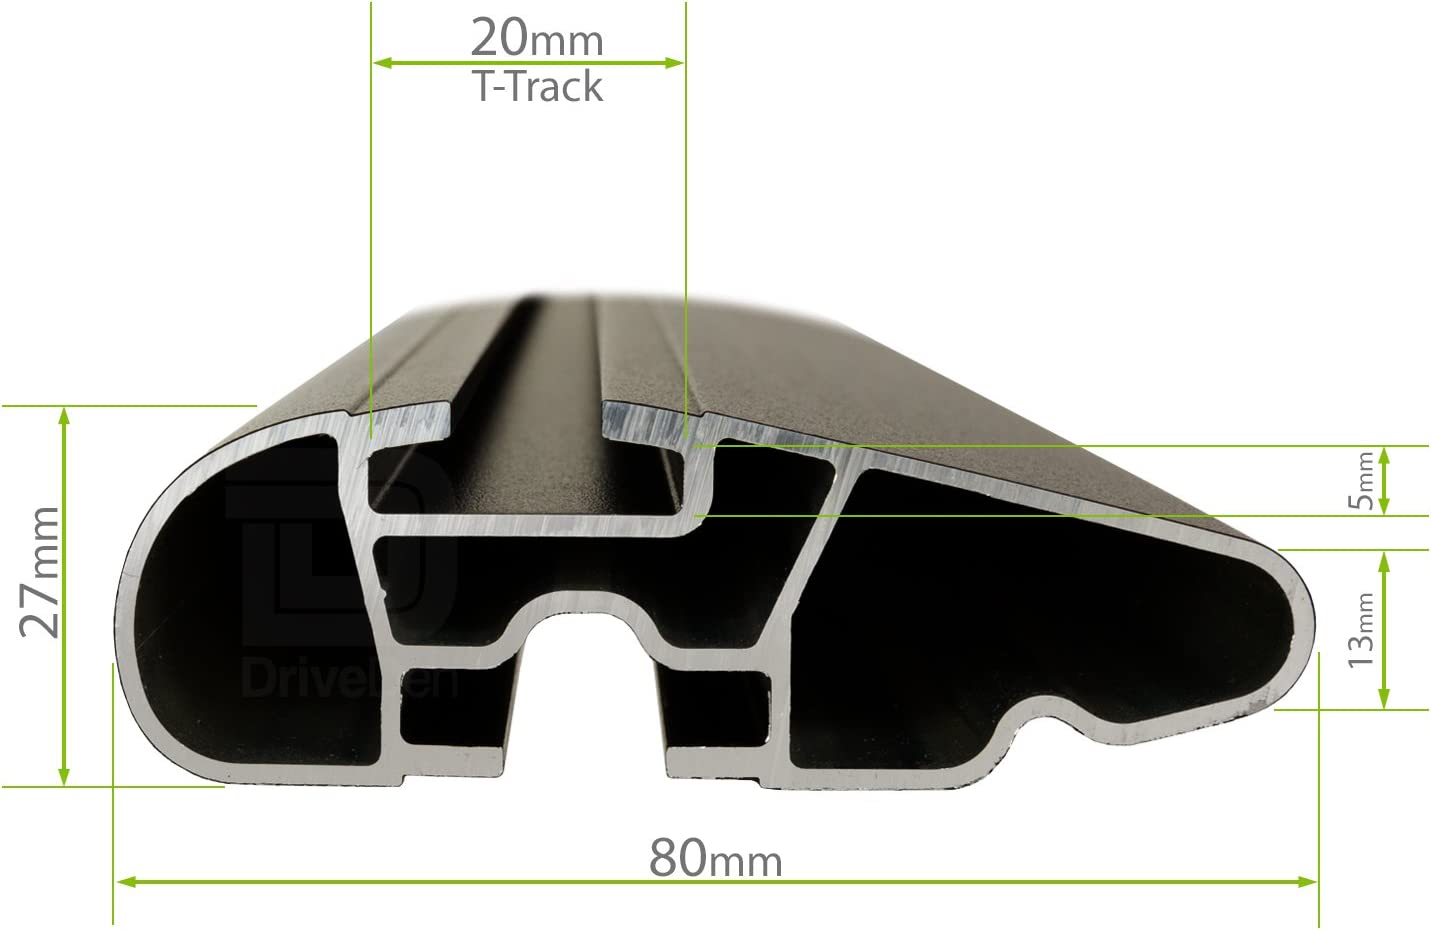 Barre portapacchi da abbinare al kit LuxHX1 - Skoda Octavia Wagon 5 porte anno 2013-2020 (con corrimano alto)